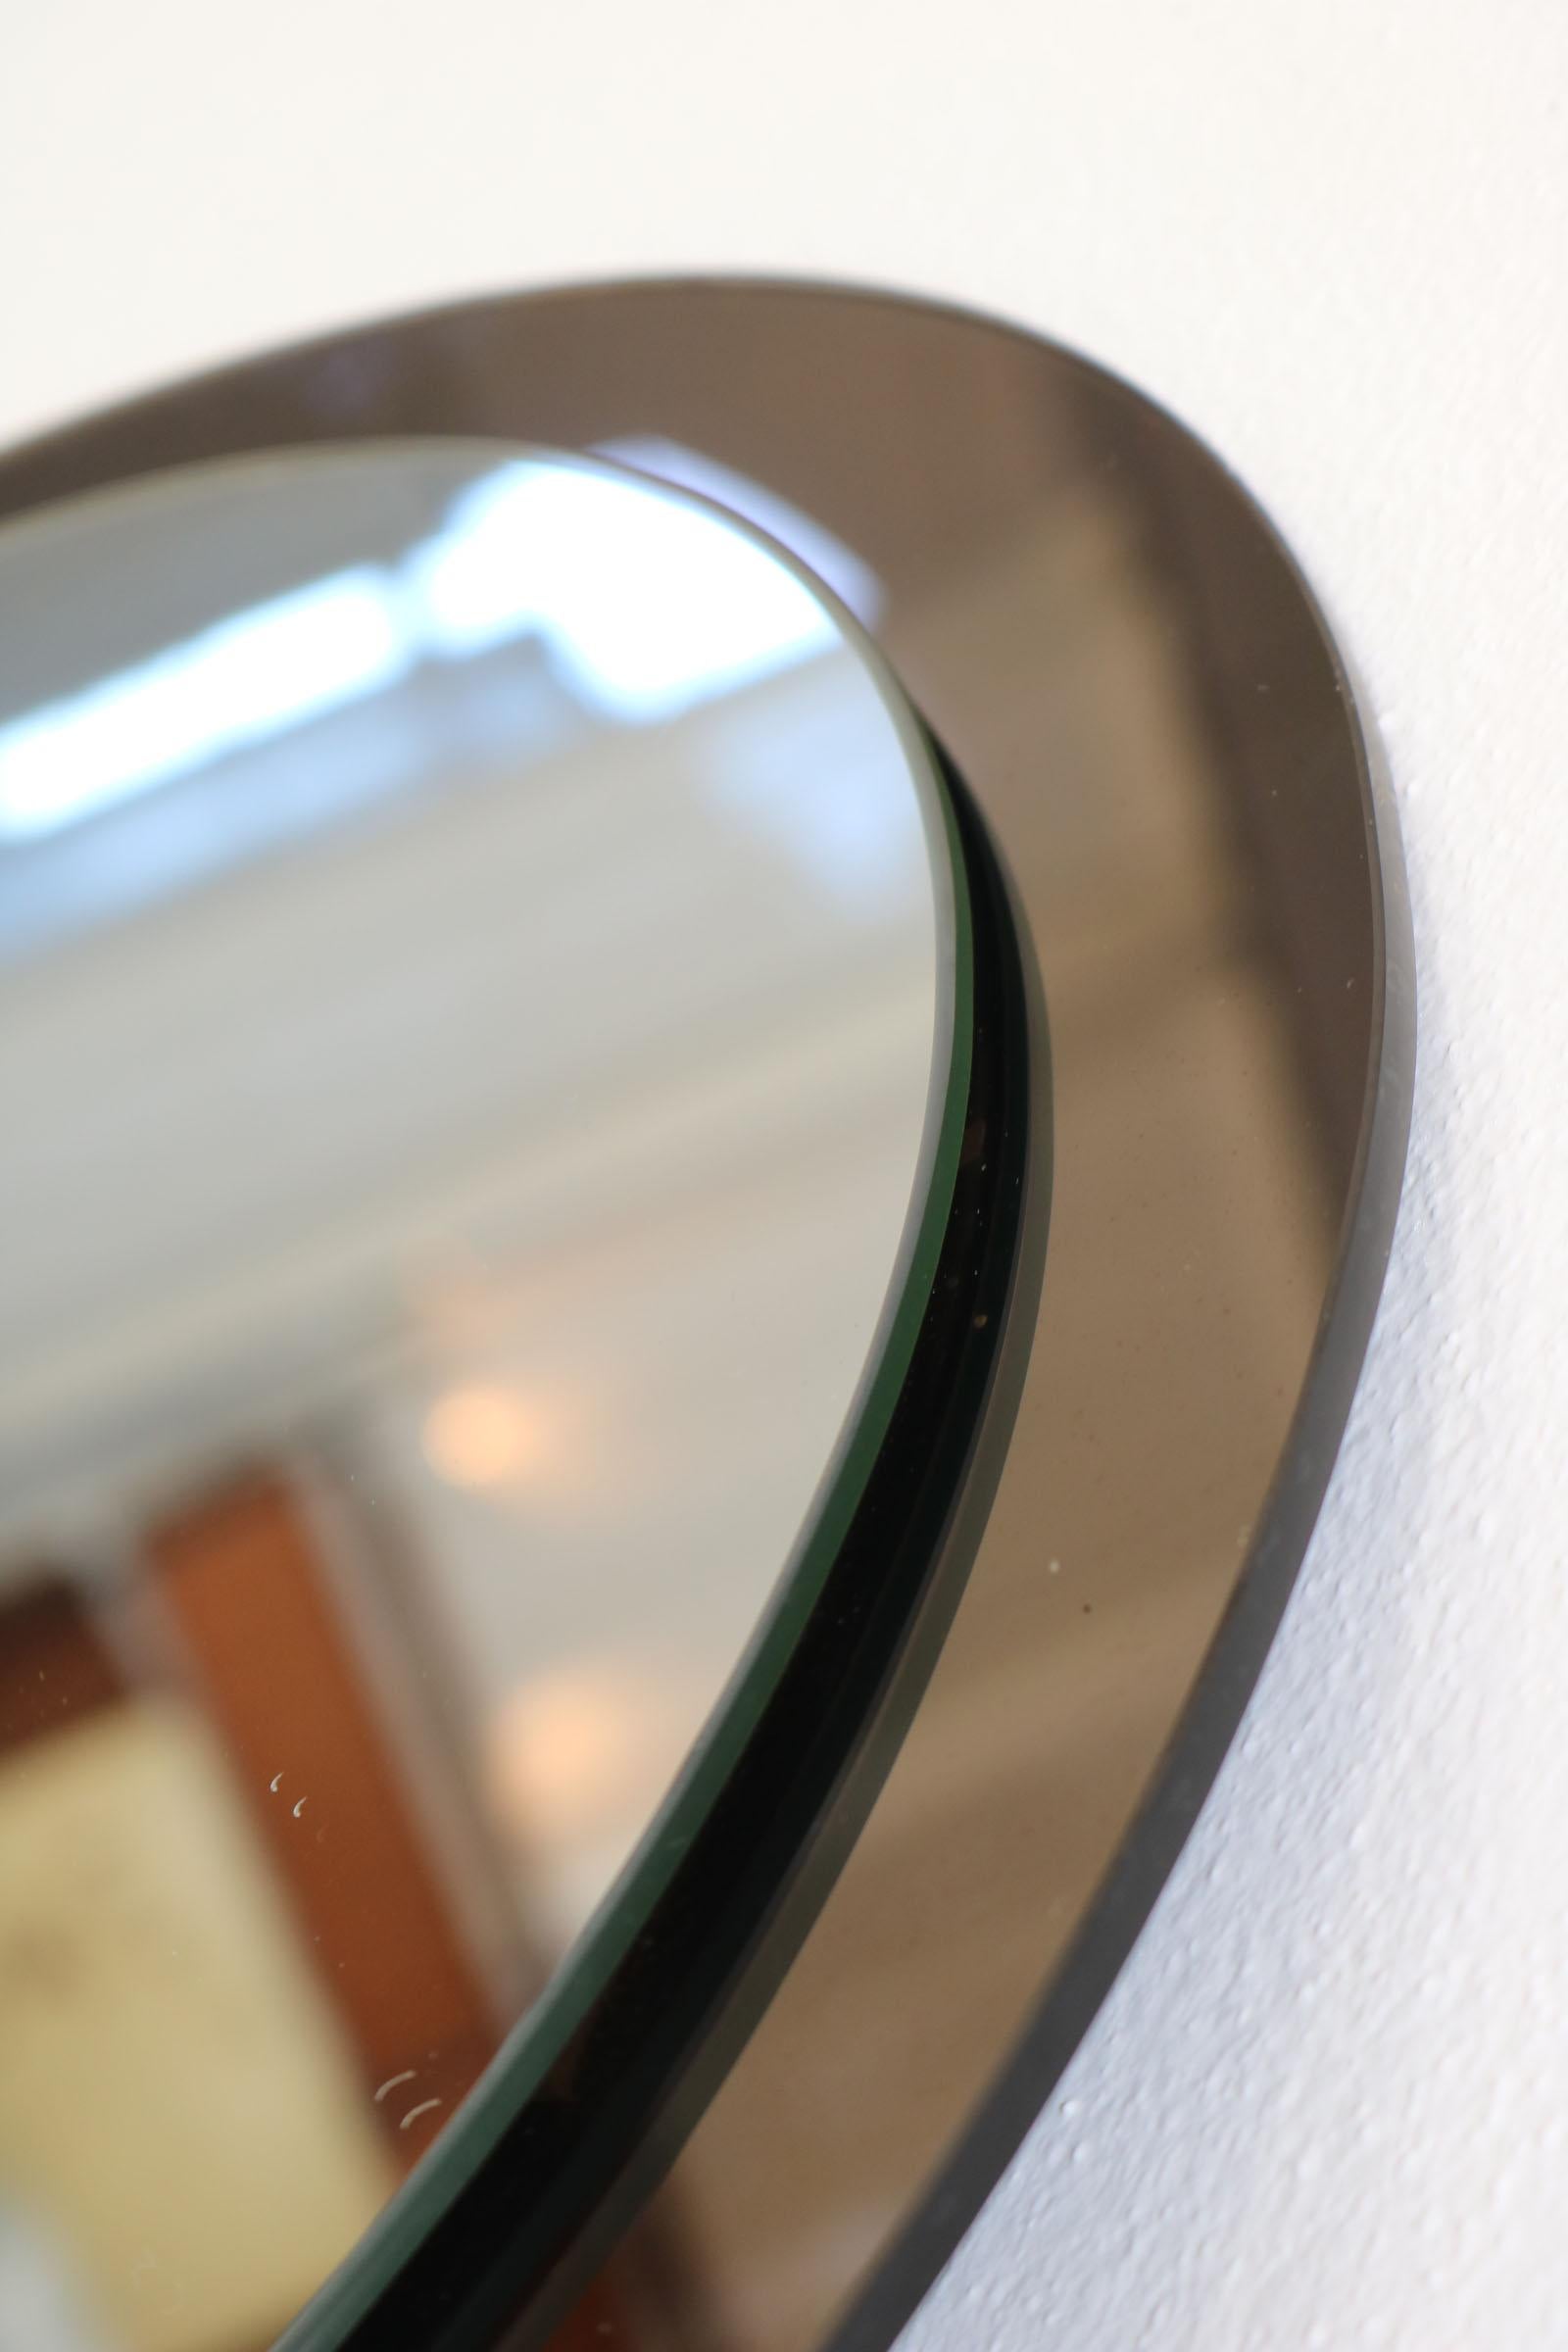 Round Italian Twotone Mirror, Design: Antonio Lupi by Cristal Luxor, 1960s For Sale 12